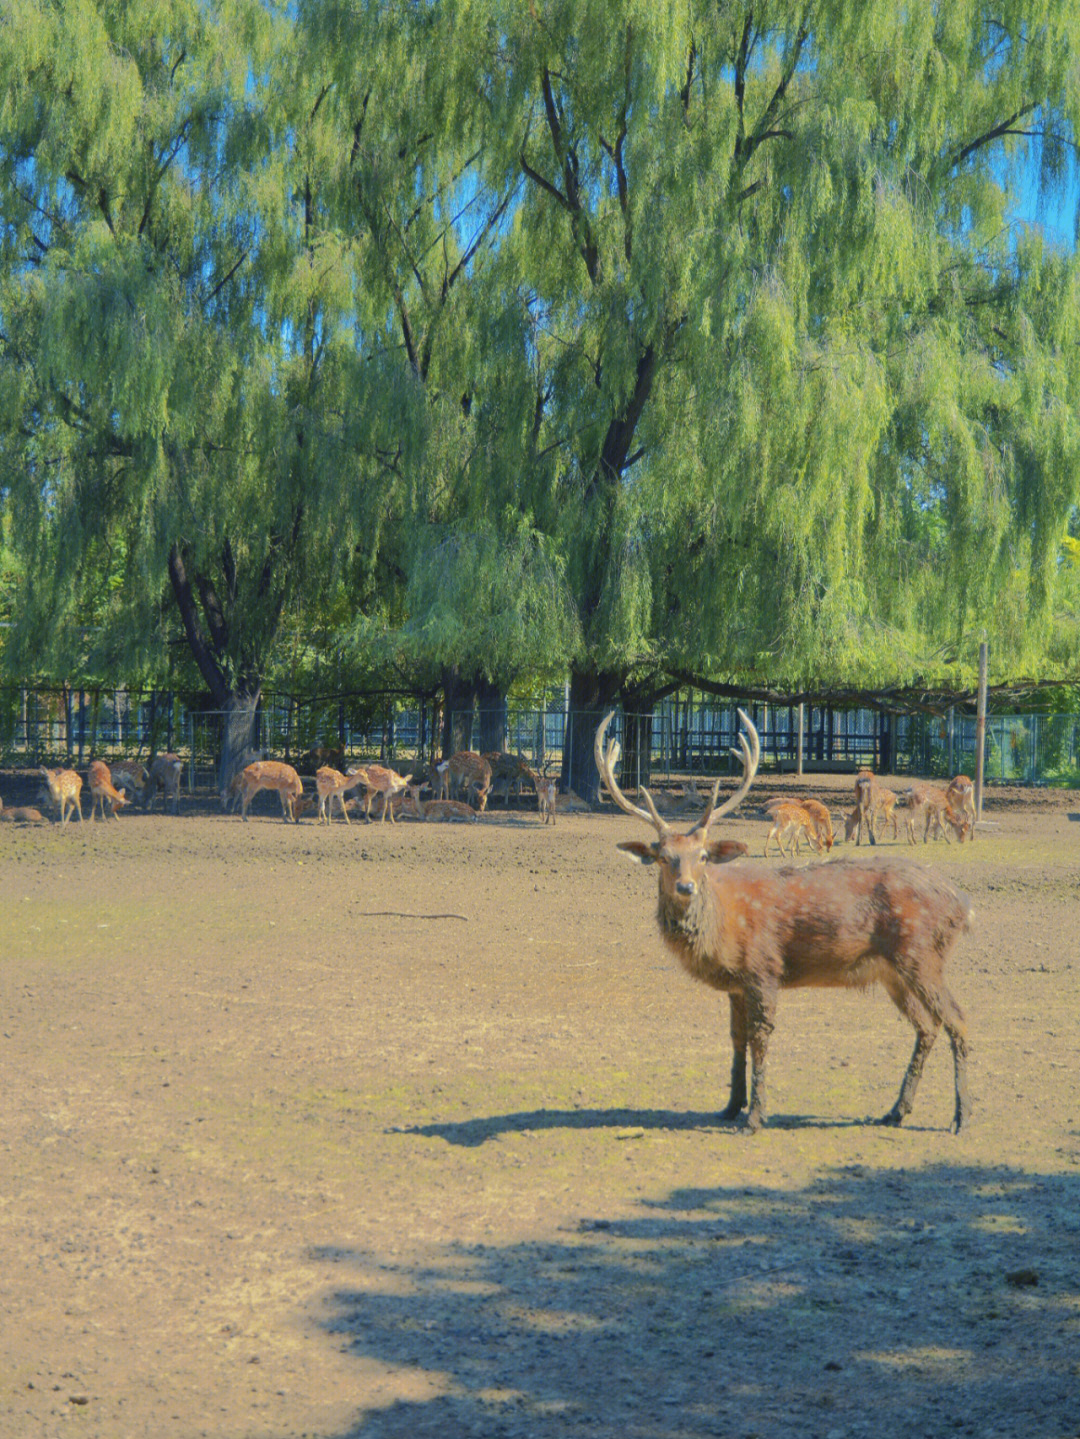 北京南海子公园麋鹿苑图片